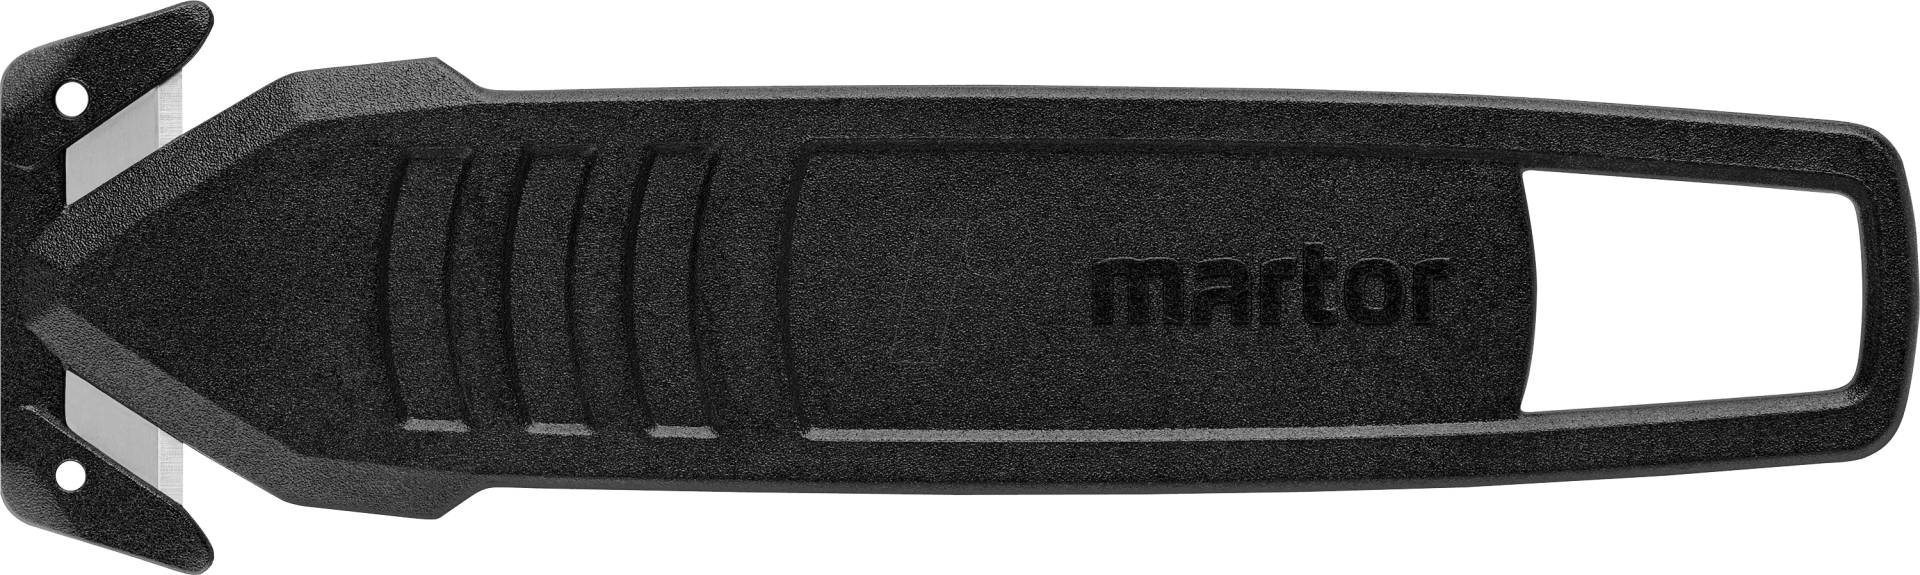 MARTOR SM 145 - Cuttermesser SECUMAX 145, Einwegmesser, 10er-Pack von Martor